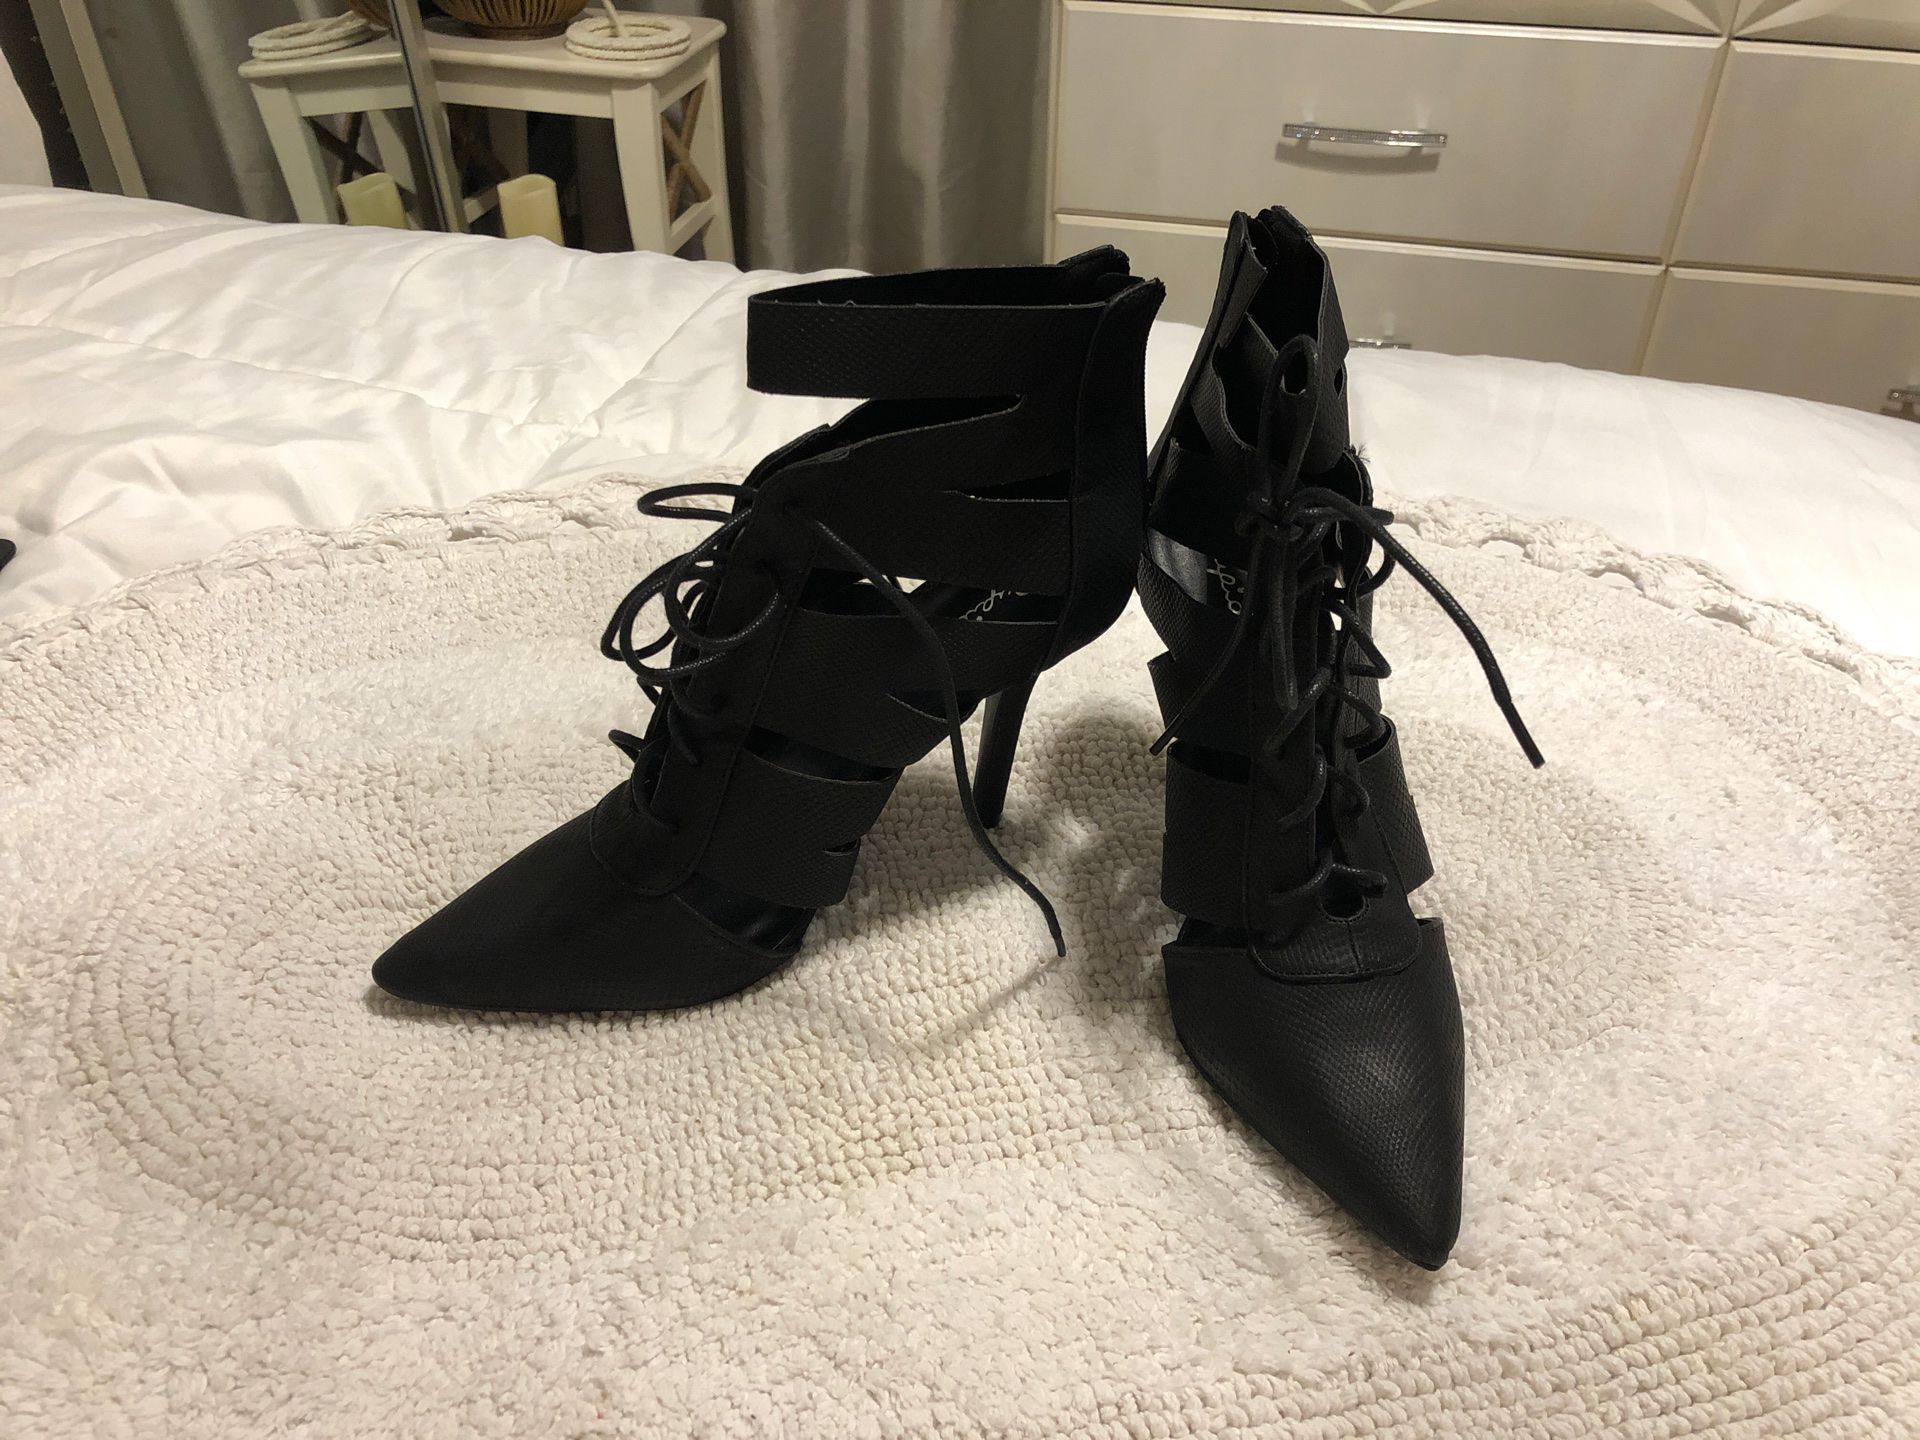 Free black pointed heels